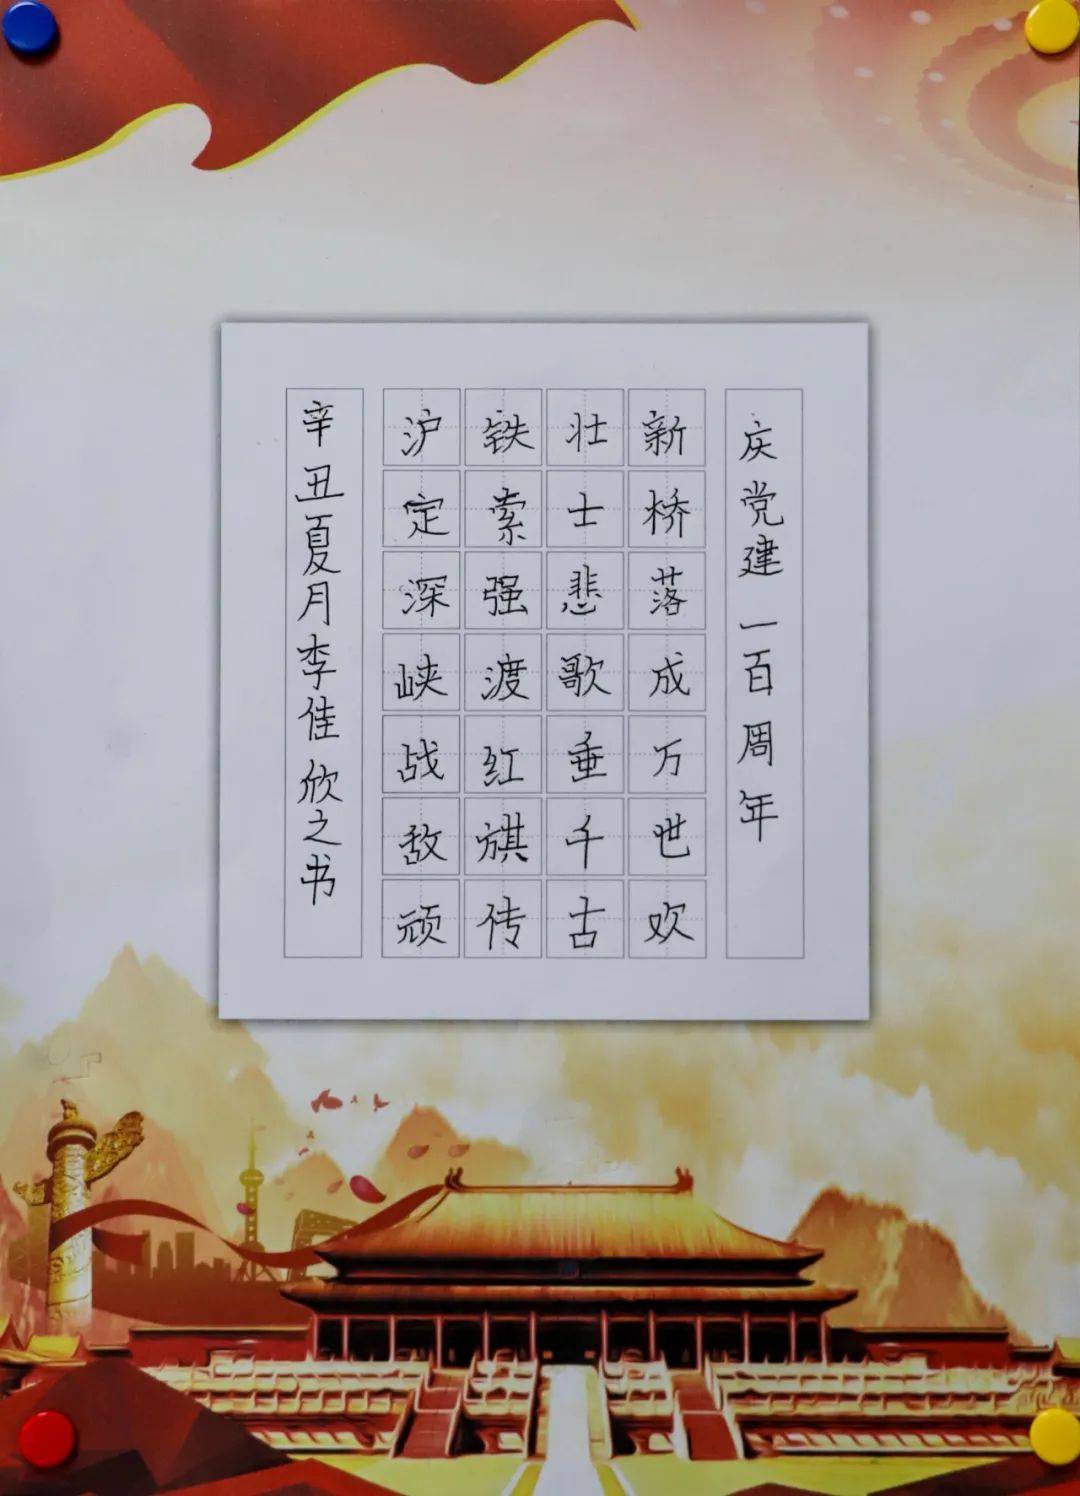 童心向党 | 北京东方红学校庆祝建党100周年学生书画手工作品展